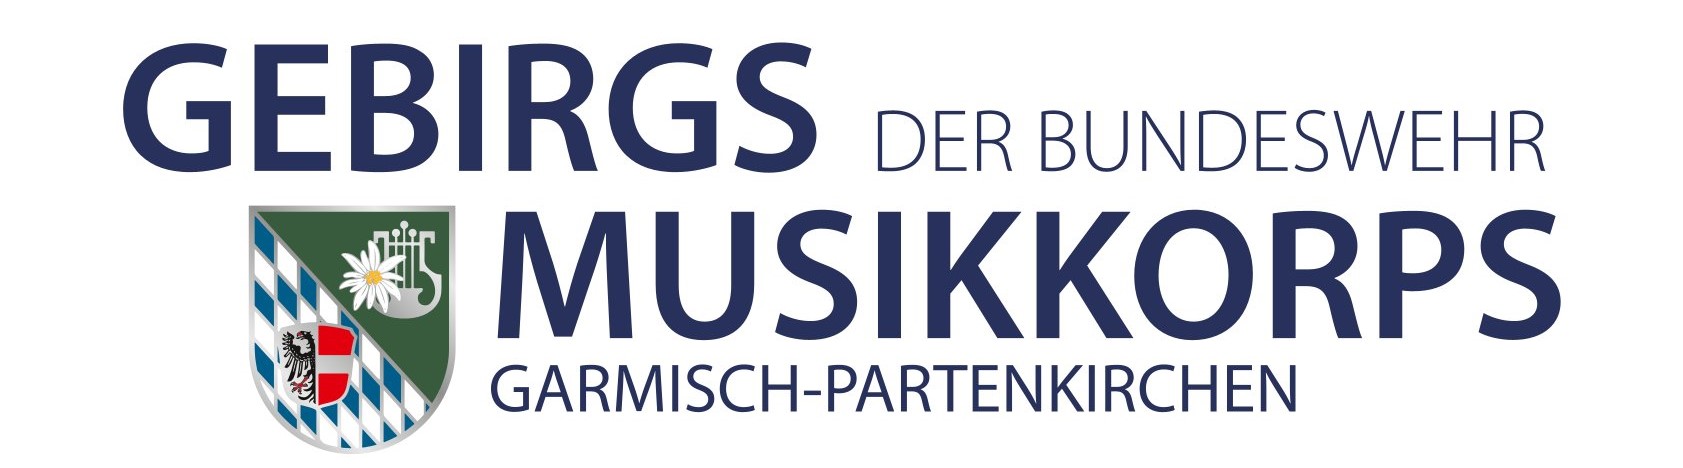 GebirgsmusikkorpsGarmisch_Logobea.jpg